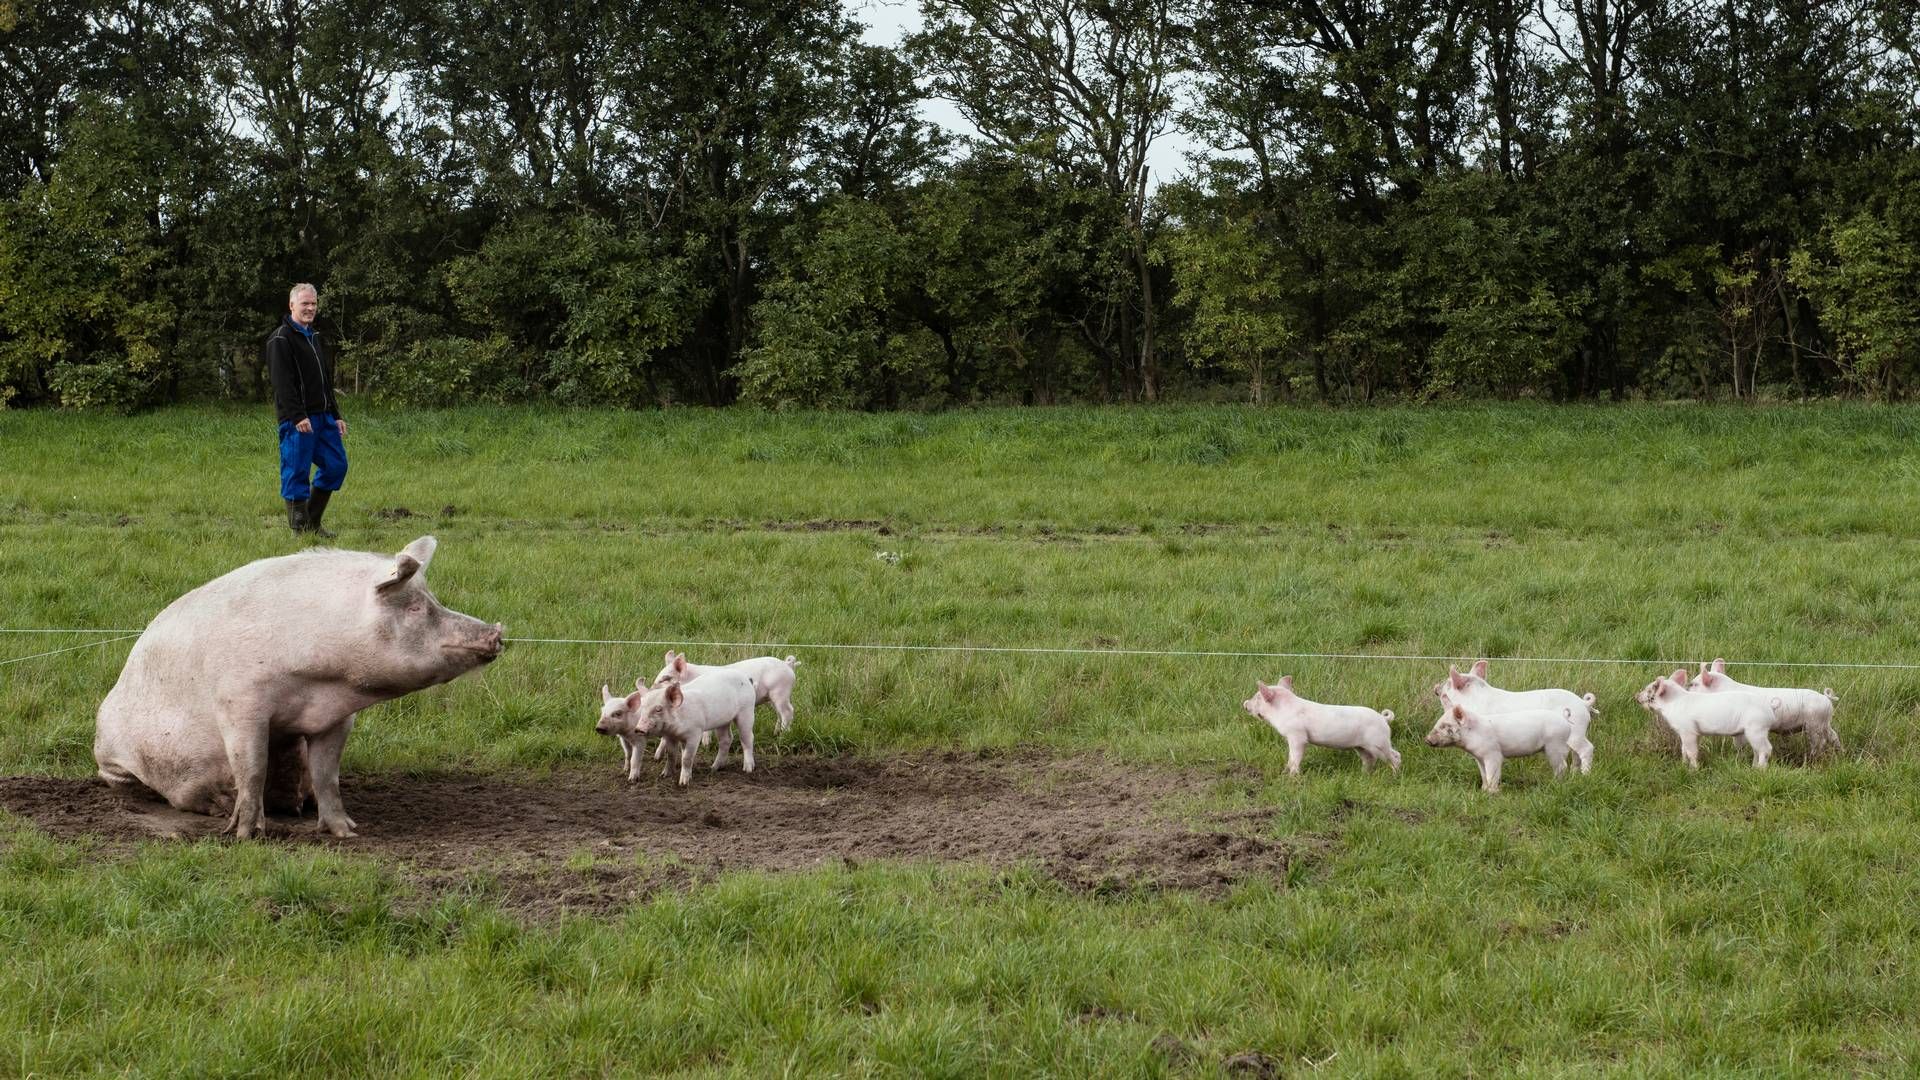 Flere faktorer har puttet pres på de økologiske svineproducenter. | Foto: Morten Lau-nielsen